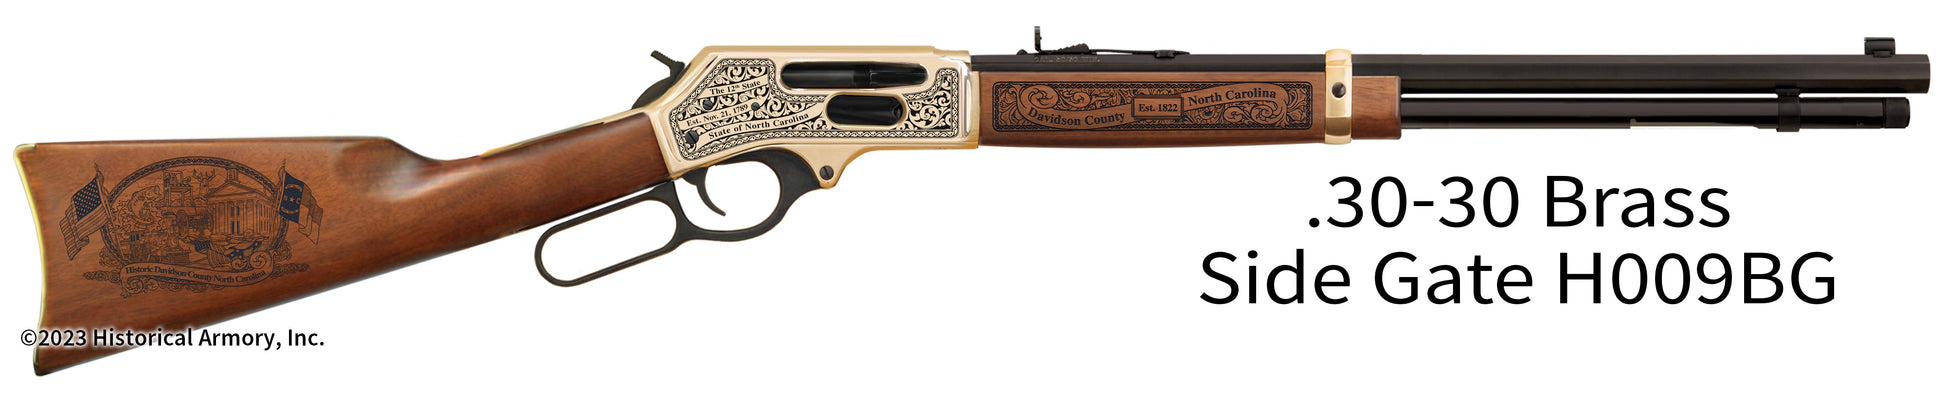 Davidson County North Carolina Engraved Henry .30-30 Brass Side Gate Rifle